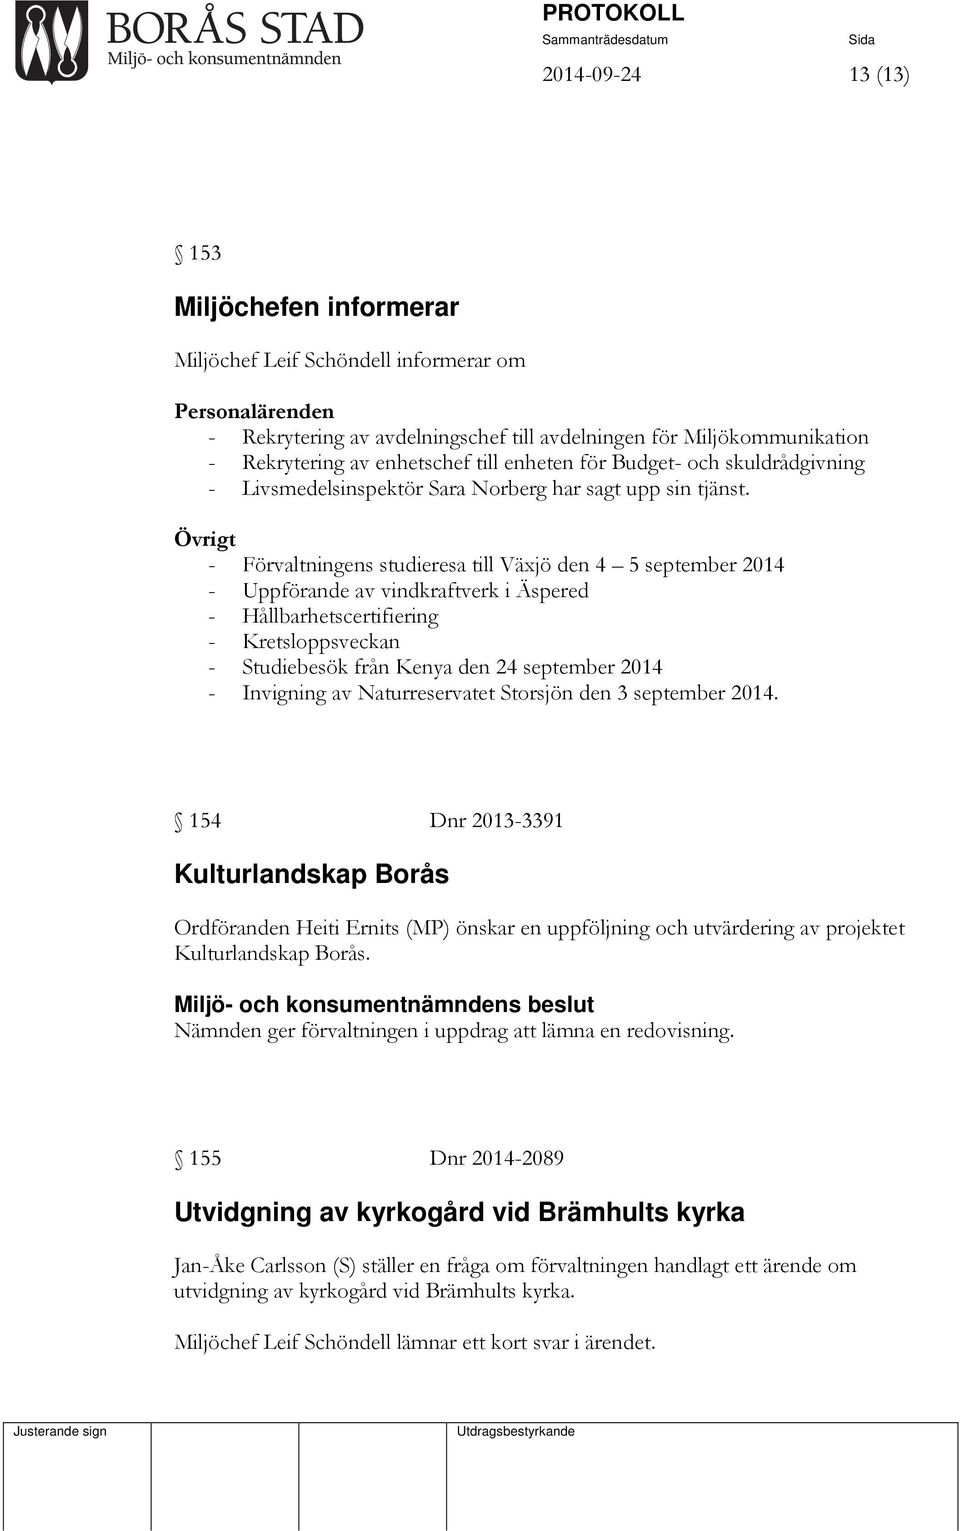 Övrigt - Förvaltningens studieresa till Växjö den 4 5 september 2014 - Uppförande av vindkraftverk i Äspered - Hållbarhetscertifiering - Kretsloppsveckan - Studiebesök från Kenya den 24 september